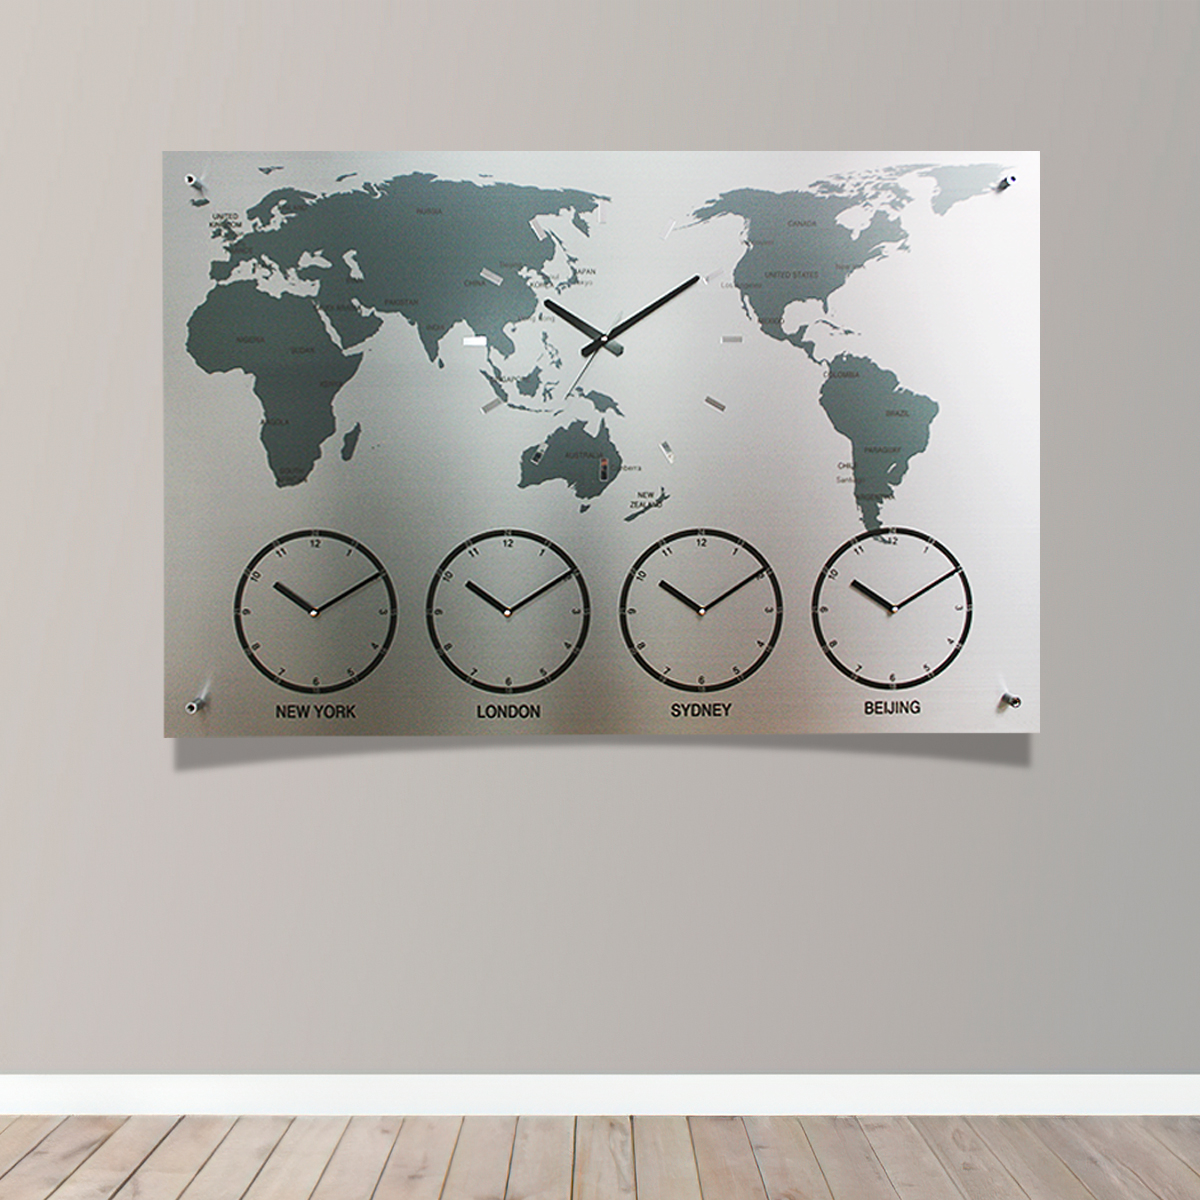 국산제작정품 월드타임벽시계-대형 160cm 다국적세계벽시계 세계시간표시